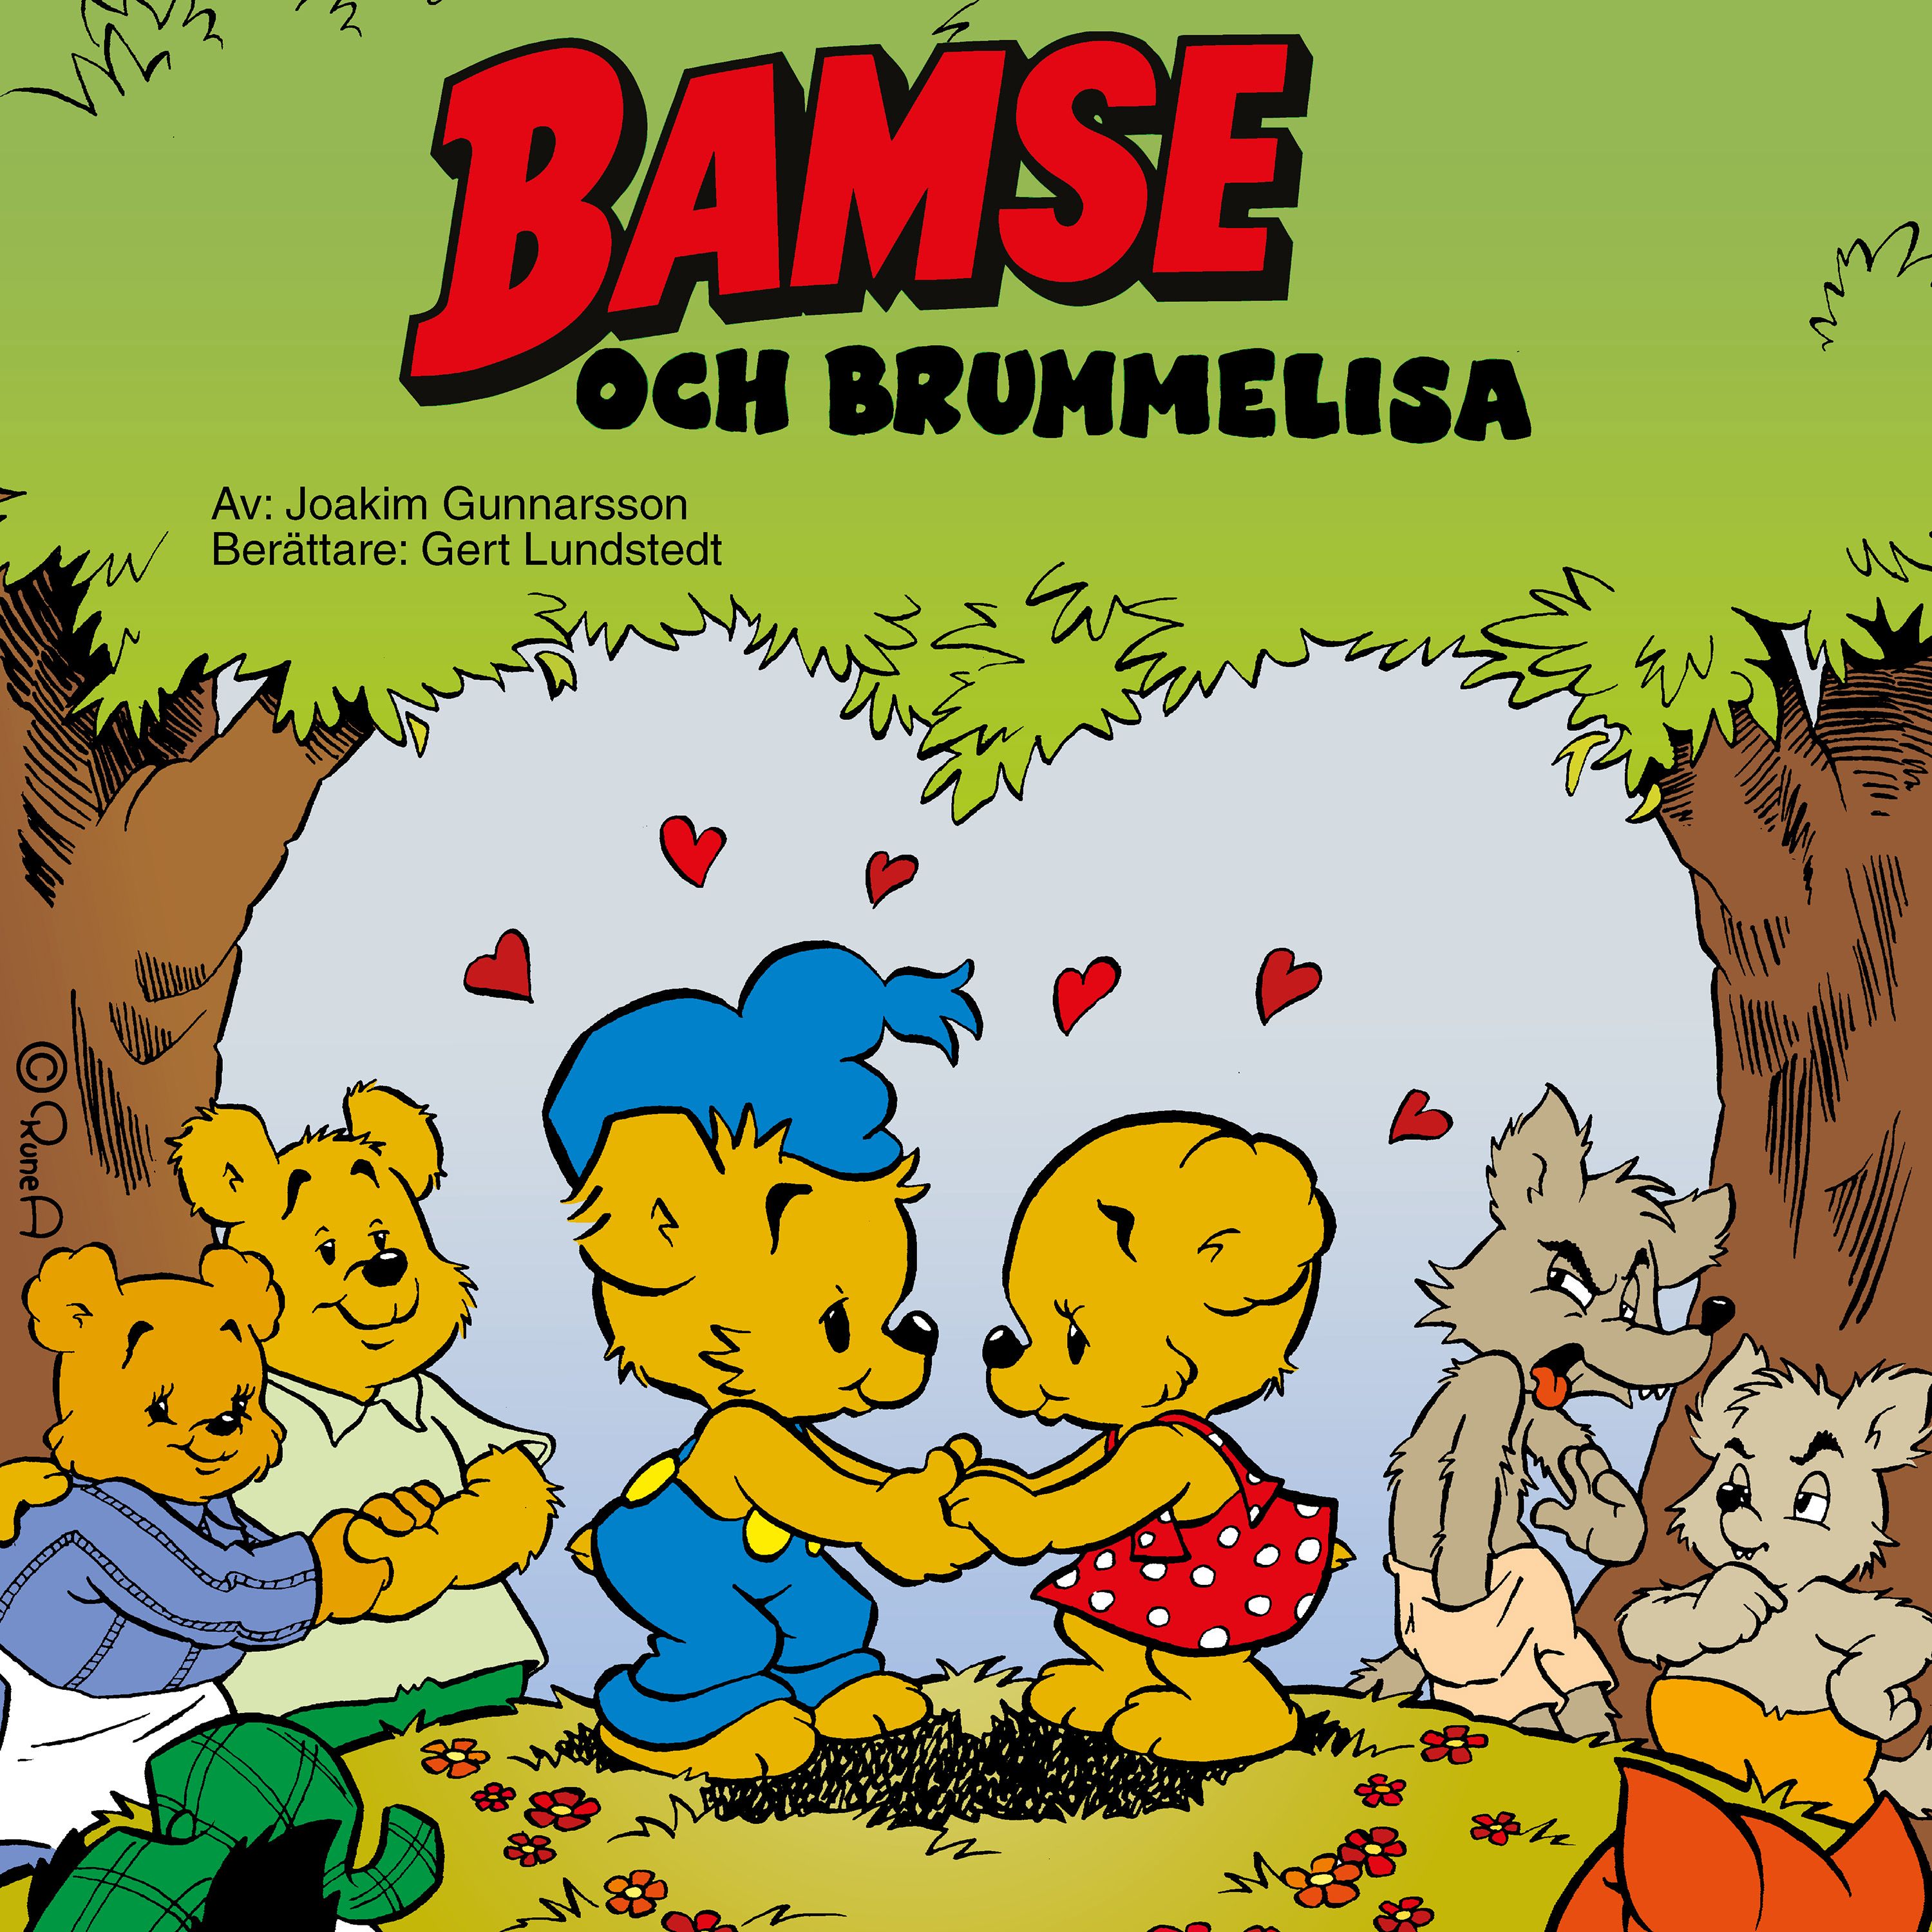 Bamse och Brummelisa, ljudbok av Joakim Gunnarsson